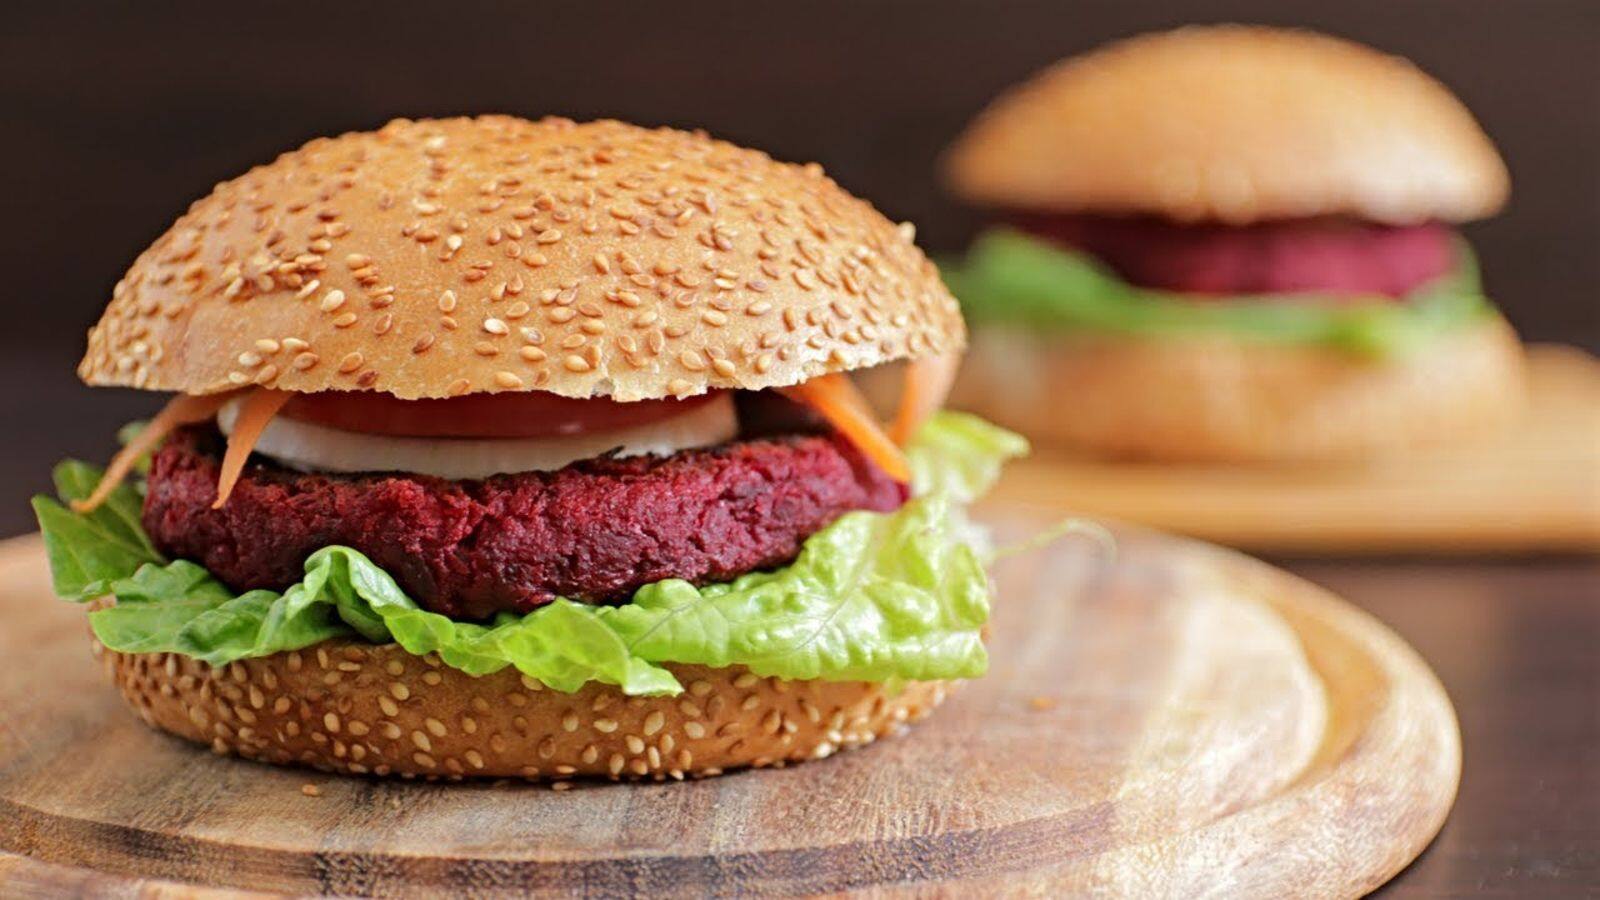 Cook this vegan beetroot burger in 4 simple steps